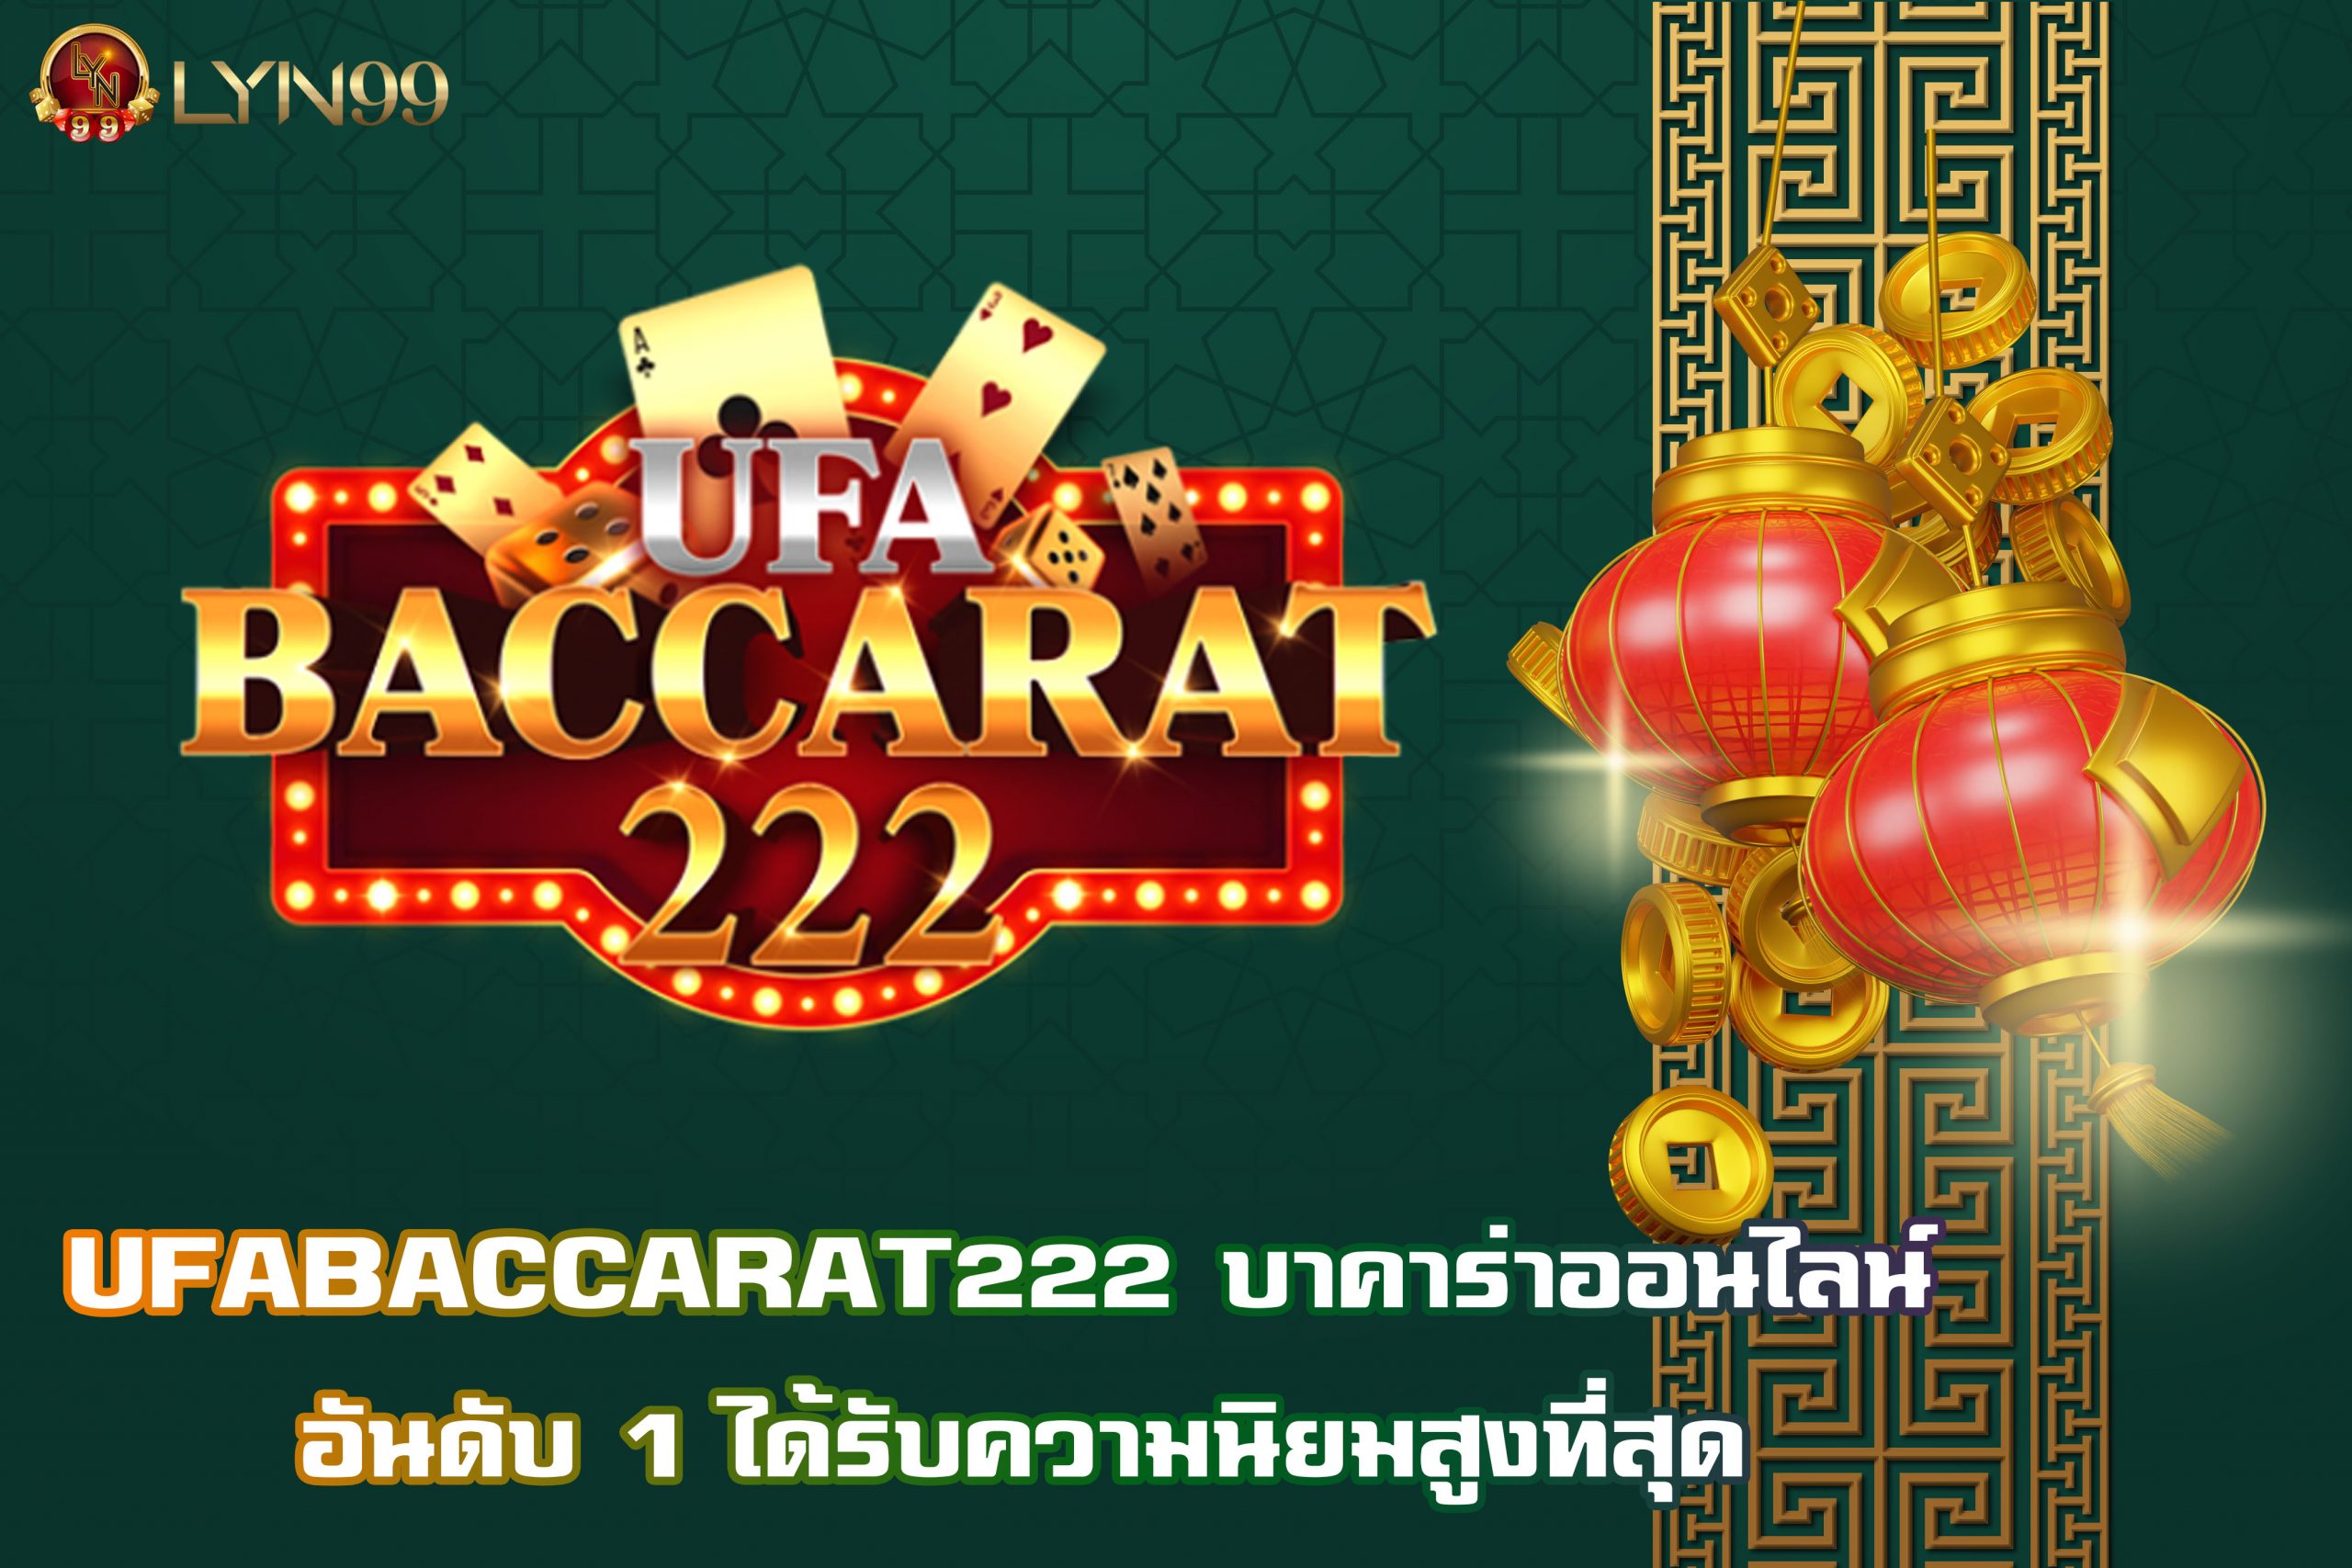 UFABACCARAT222 บาคาร่าออนไลน์ อันดับ 1 ได้รับความนิยมสูงที่สุด